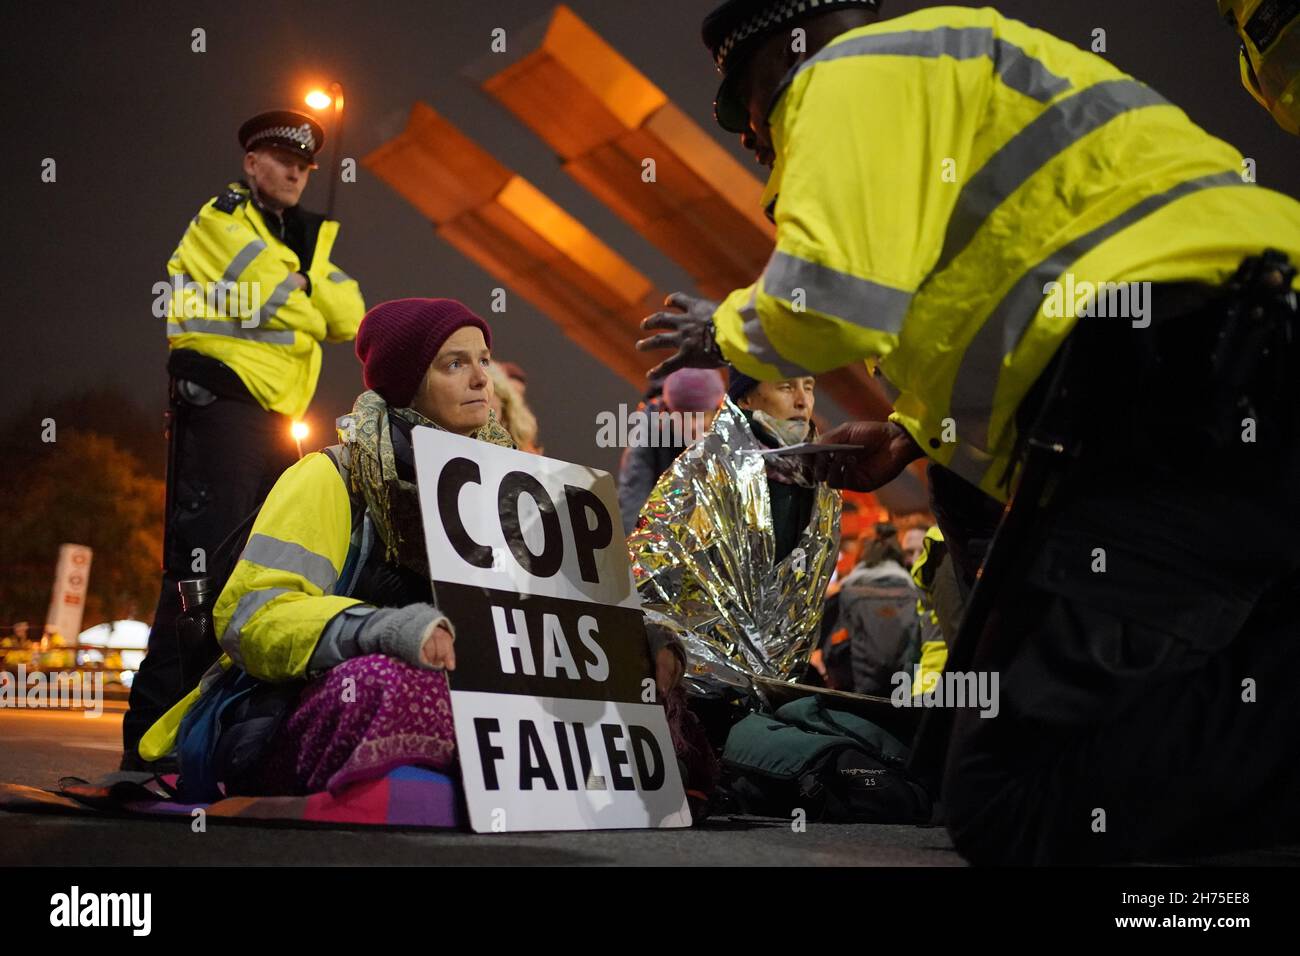 Les activistes climatiques d'Isolate Britain participent à une manifestation sur le pont Vauxhall dans le centre de Londres.Date de la photo: Samedi 20 novembre 2021. Banque D'Images